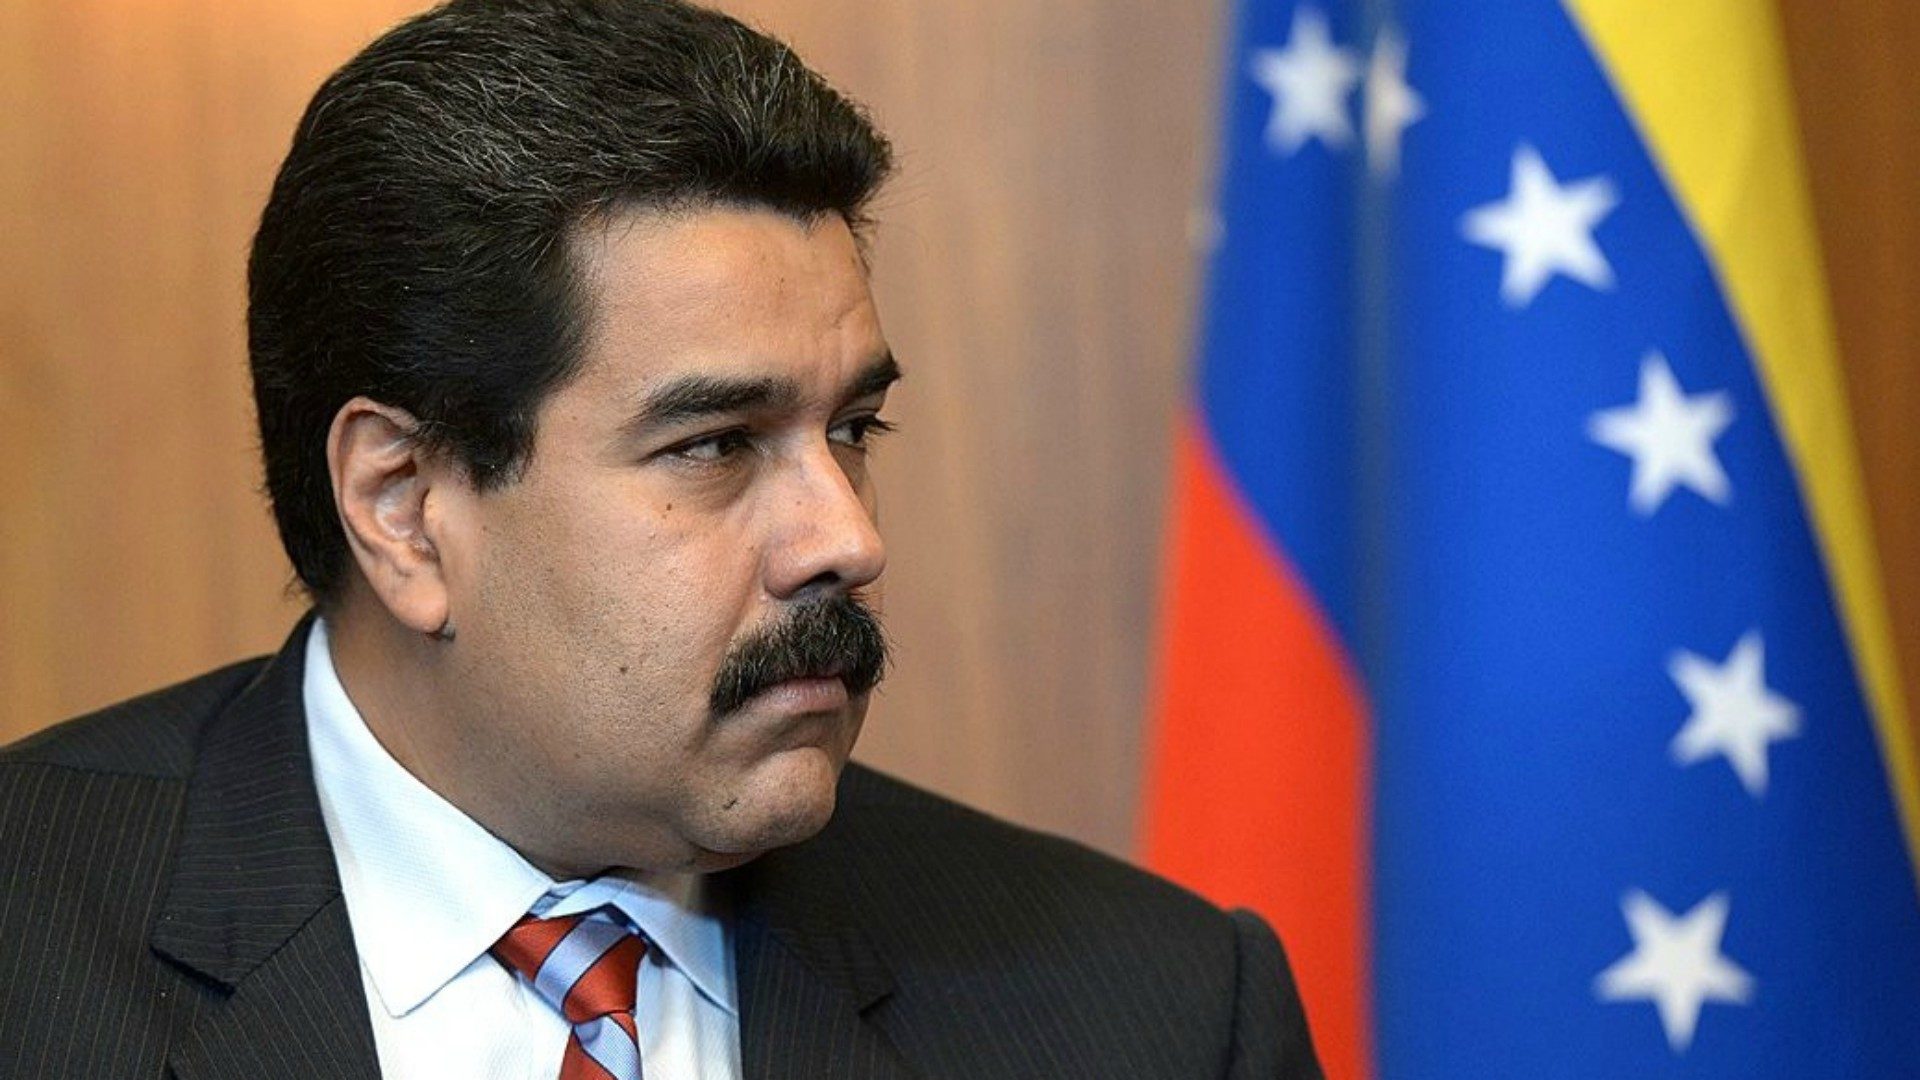 Le président Maduro voit sont pays s'enfoncer dans la crise (photo:Kremlin.ru)